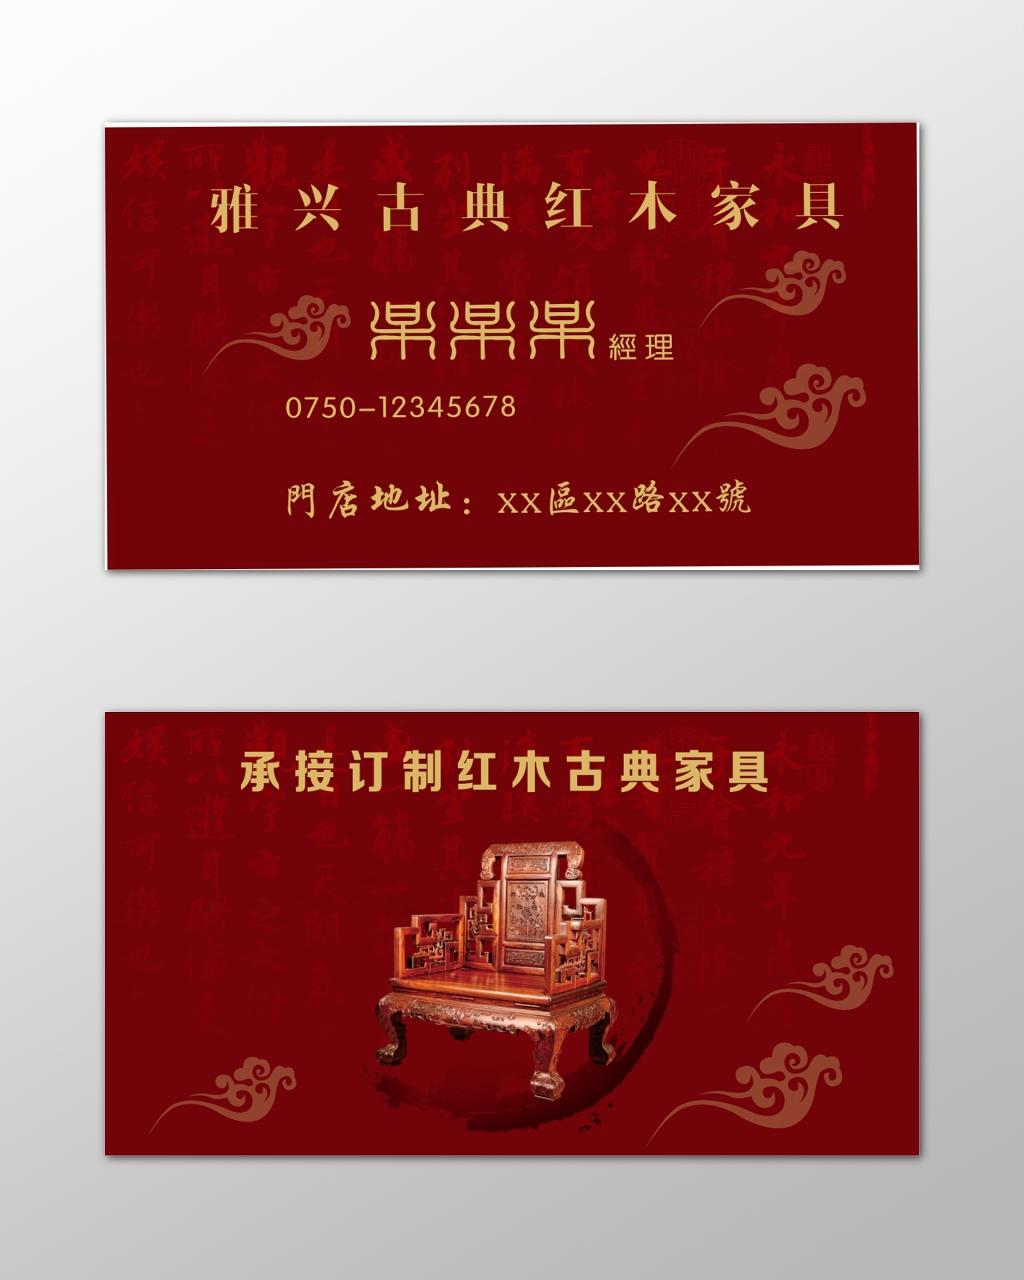 串串名片古典家具红木家具简约红色名片设计模板